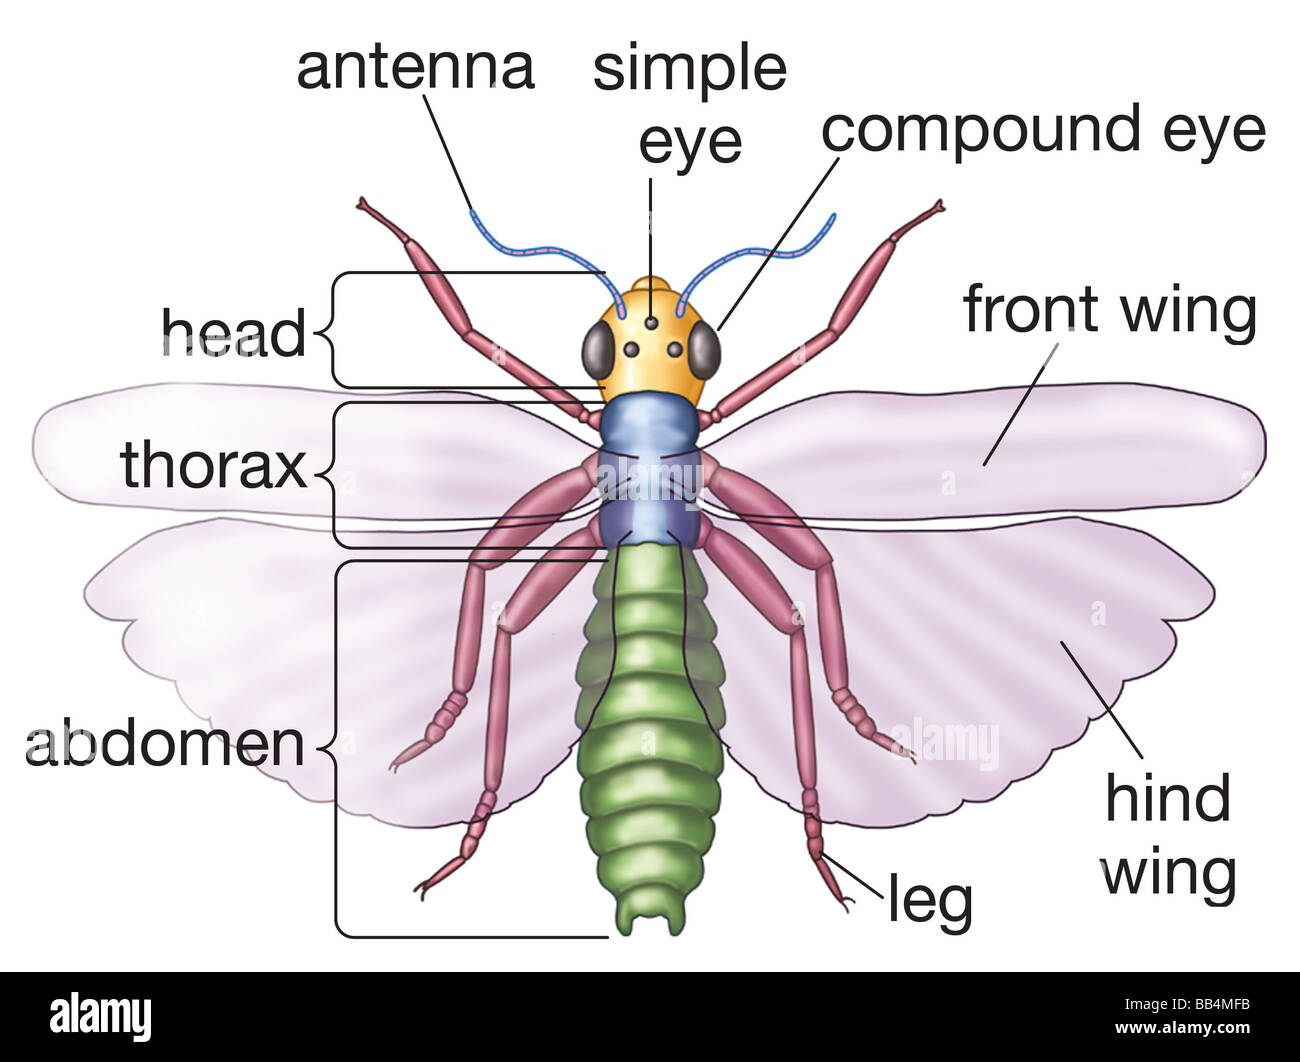 Illustrazione semplificata di un insetto generalizzato visto dall'alto, con parti di base denominata. Foto Stock